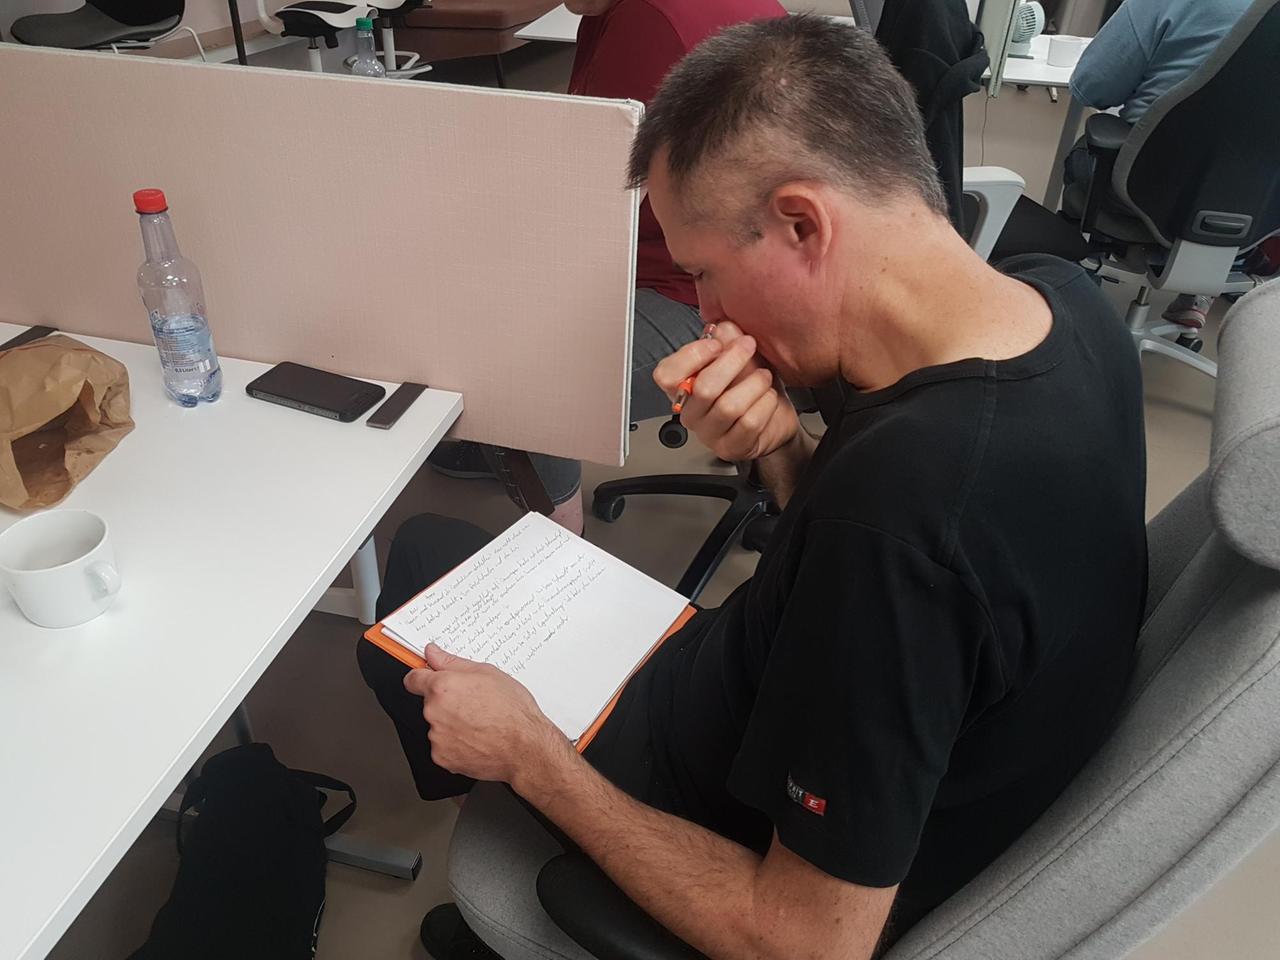  Ein Teilnehmer feilt an seinem Text. Er sitzt an einem Tisch und schaut konzentriert auf seine Notizen.